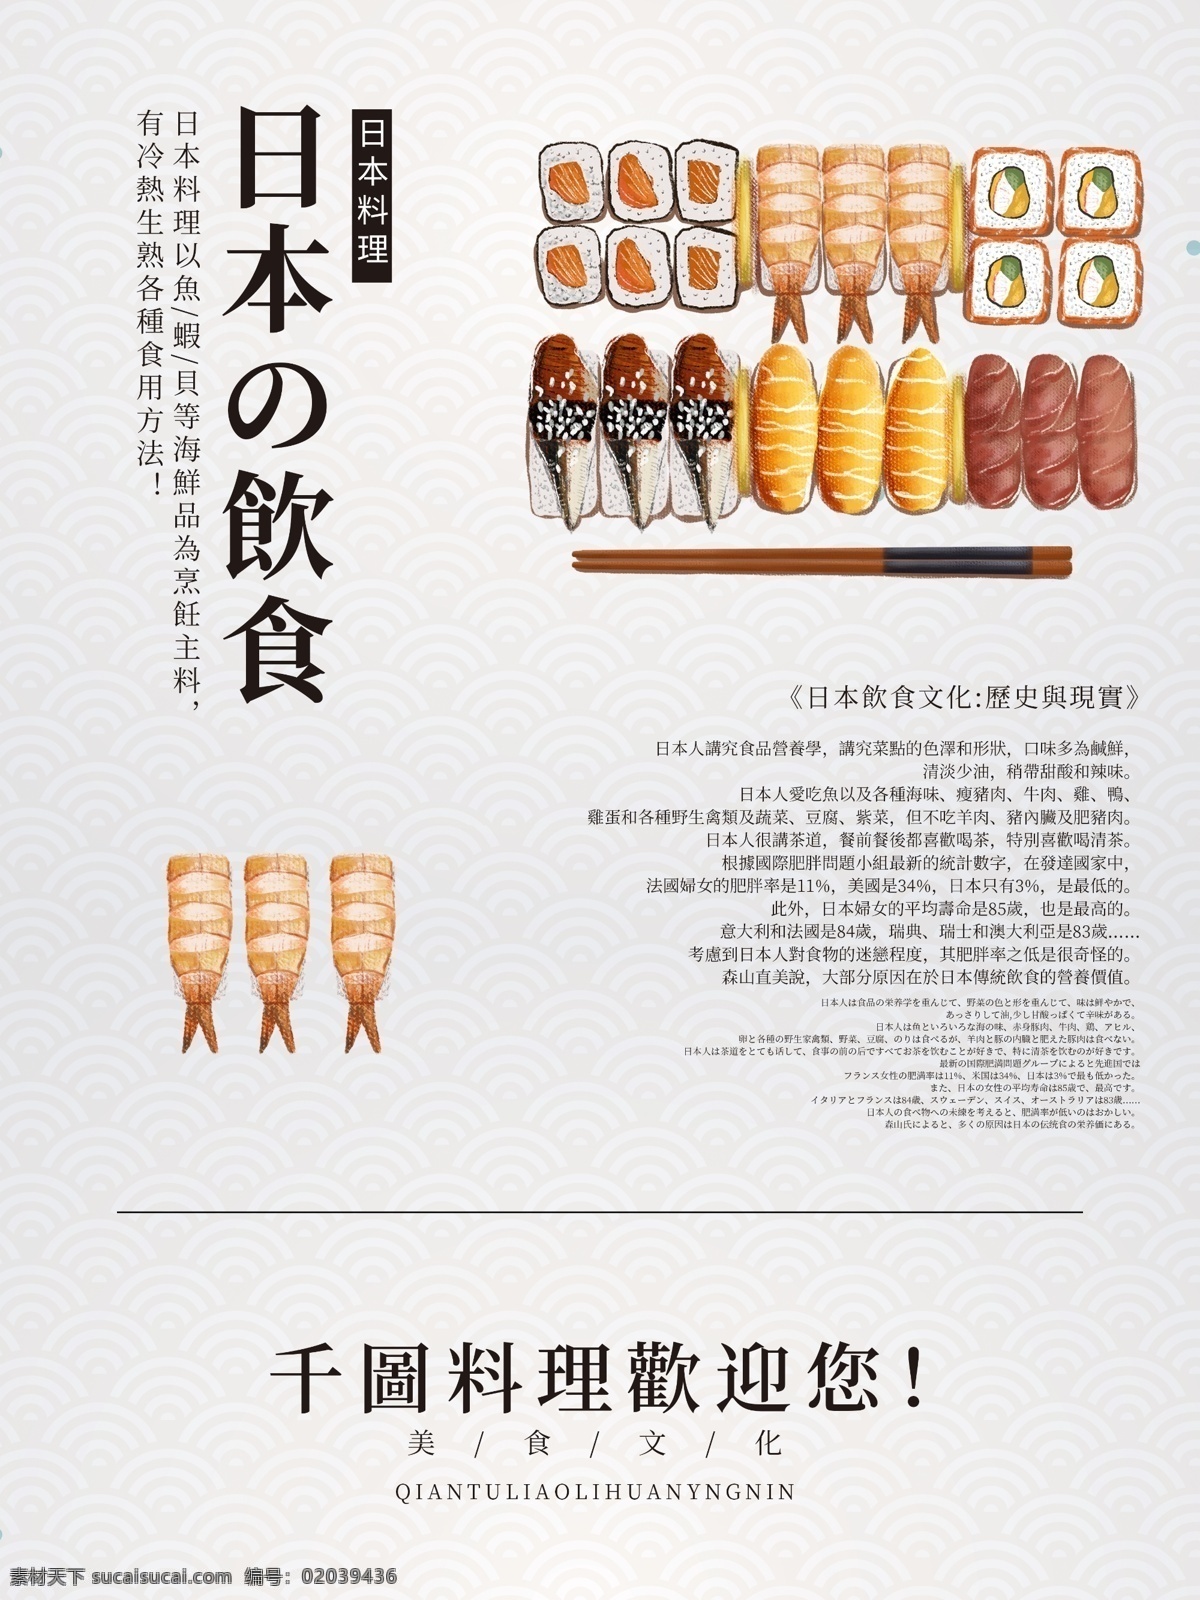 简约 日本 饮食文化 海报 旅游 文化 饮食 美食 寿司 简洁